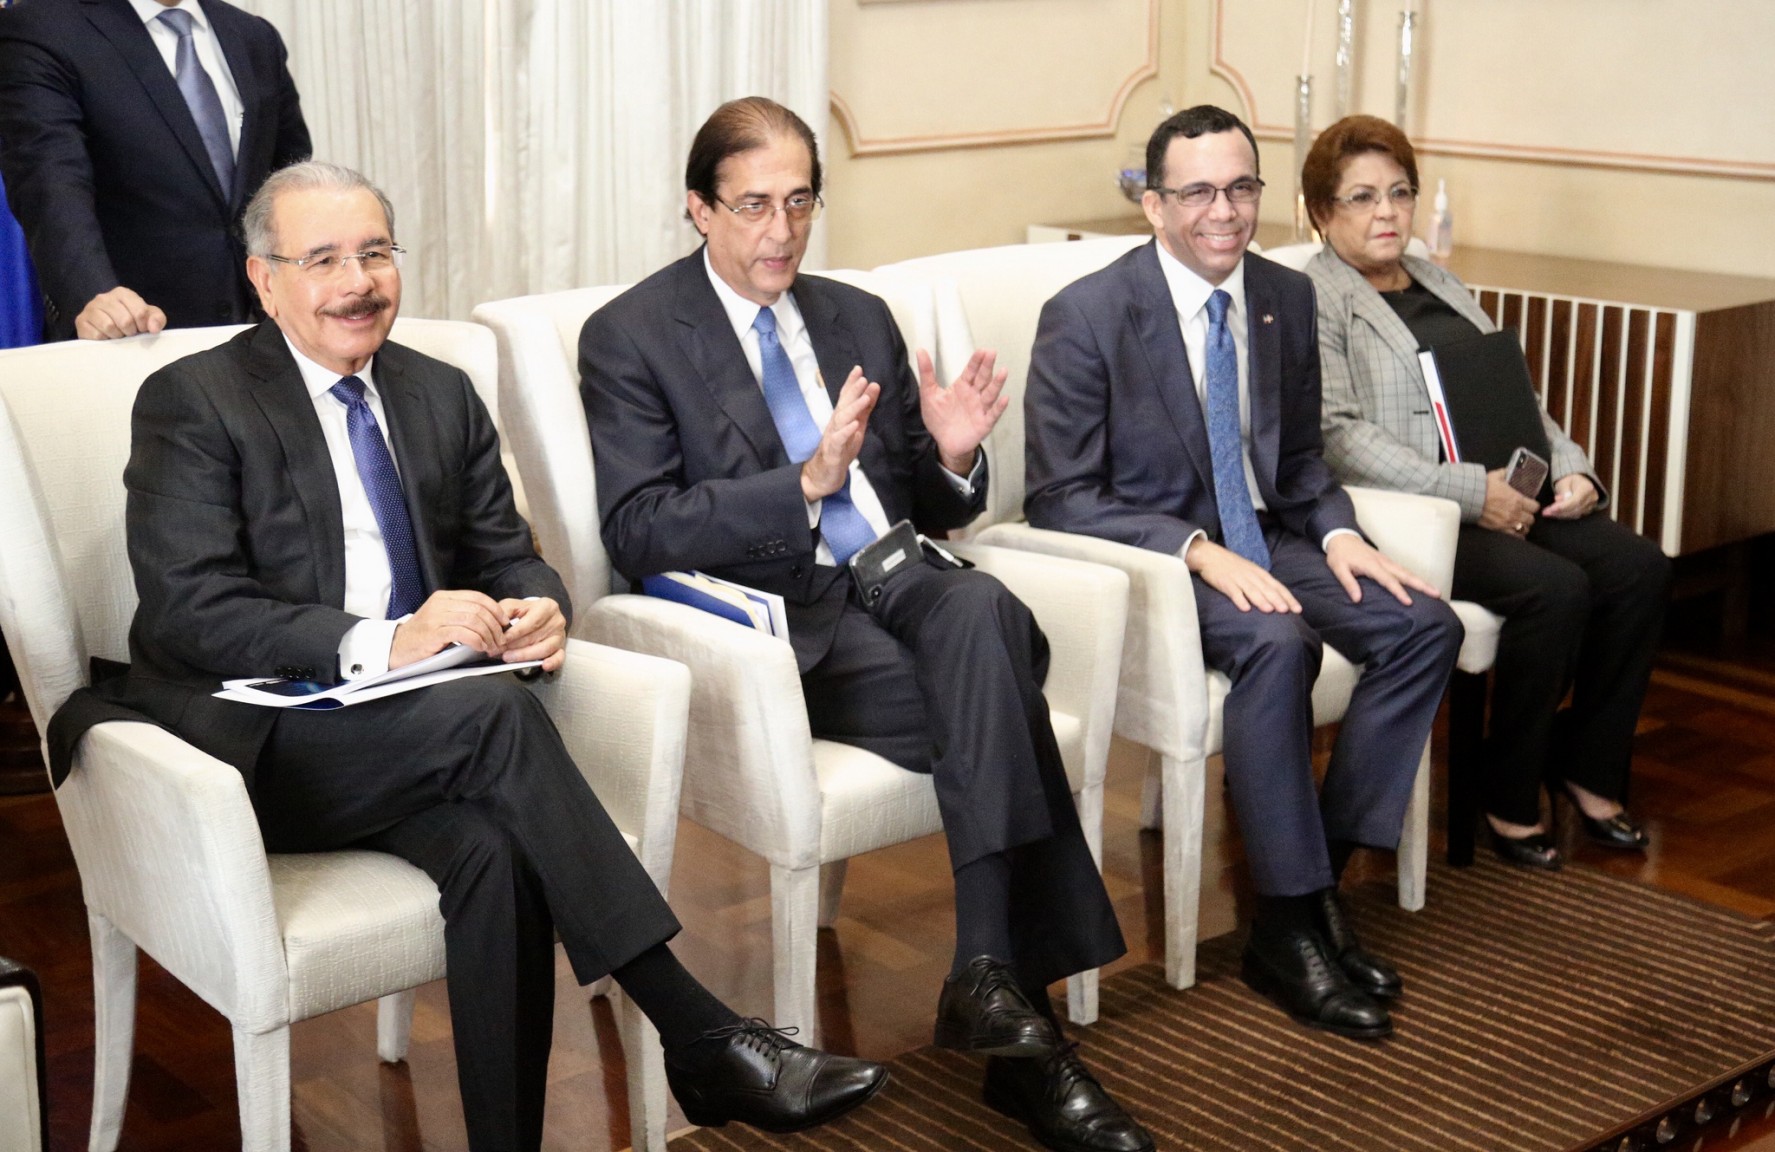 REPÚBLICA DOMINICANA: Presidente Danilo Medina pasa balance a resultados República Digital. Gustavo Montalvo anuncia próxima semana lanzamiento nuevos servicios